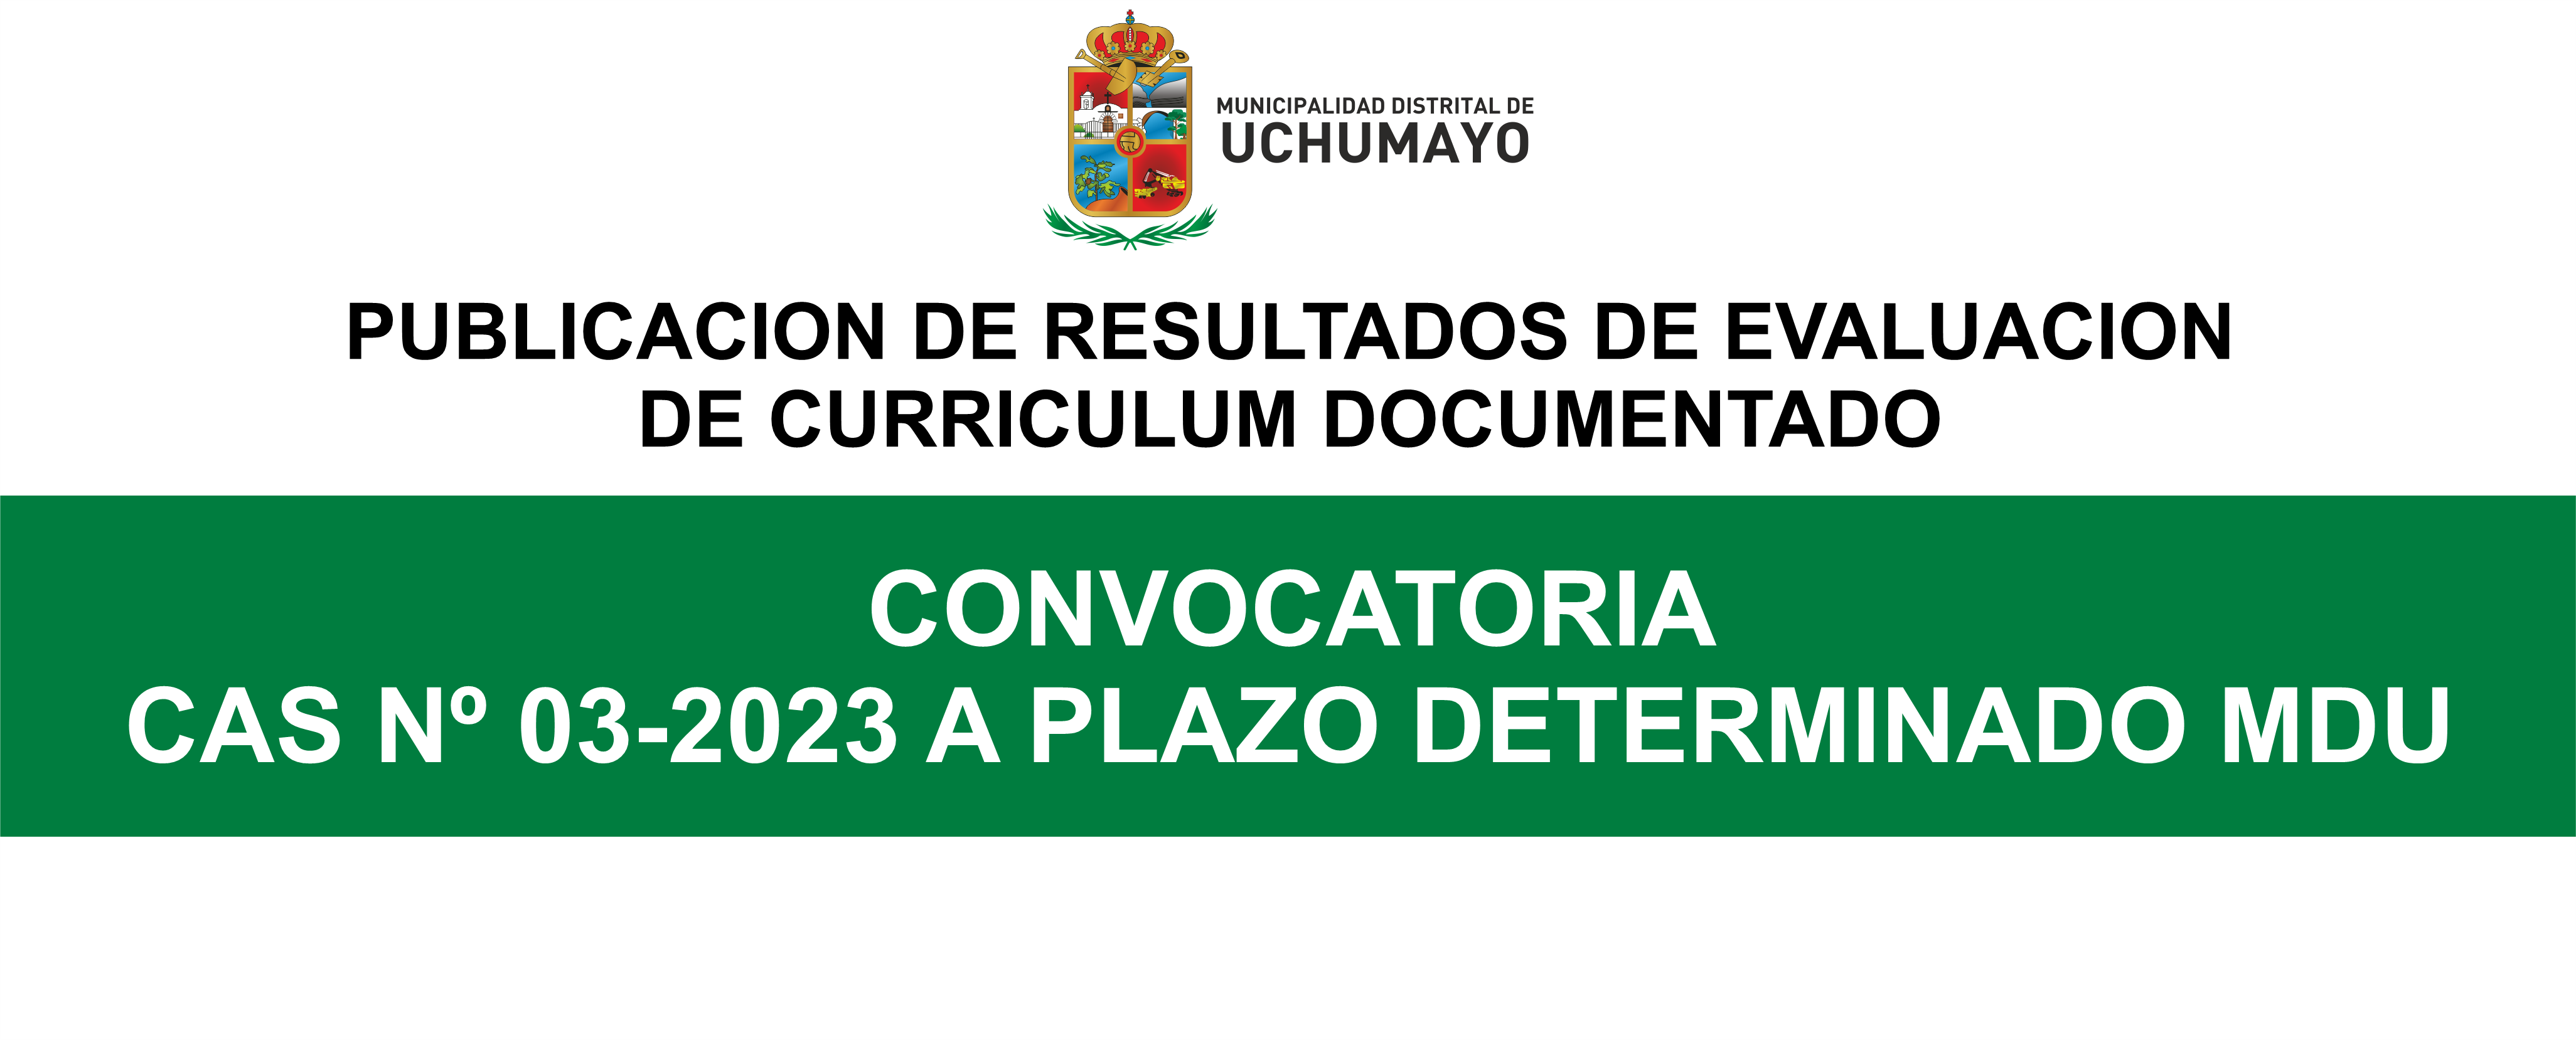 RESULTADOS DE LA CONVOCATORIA CAS Nº 03-2023 A PLAZO DETERMINADO MDU